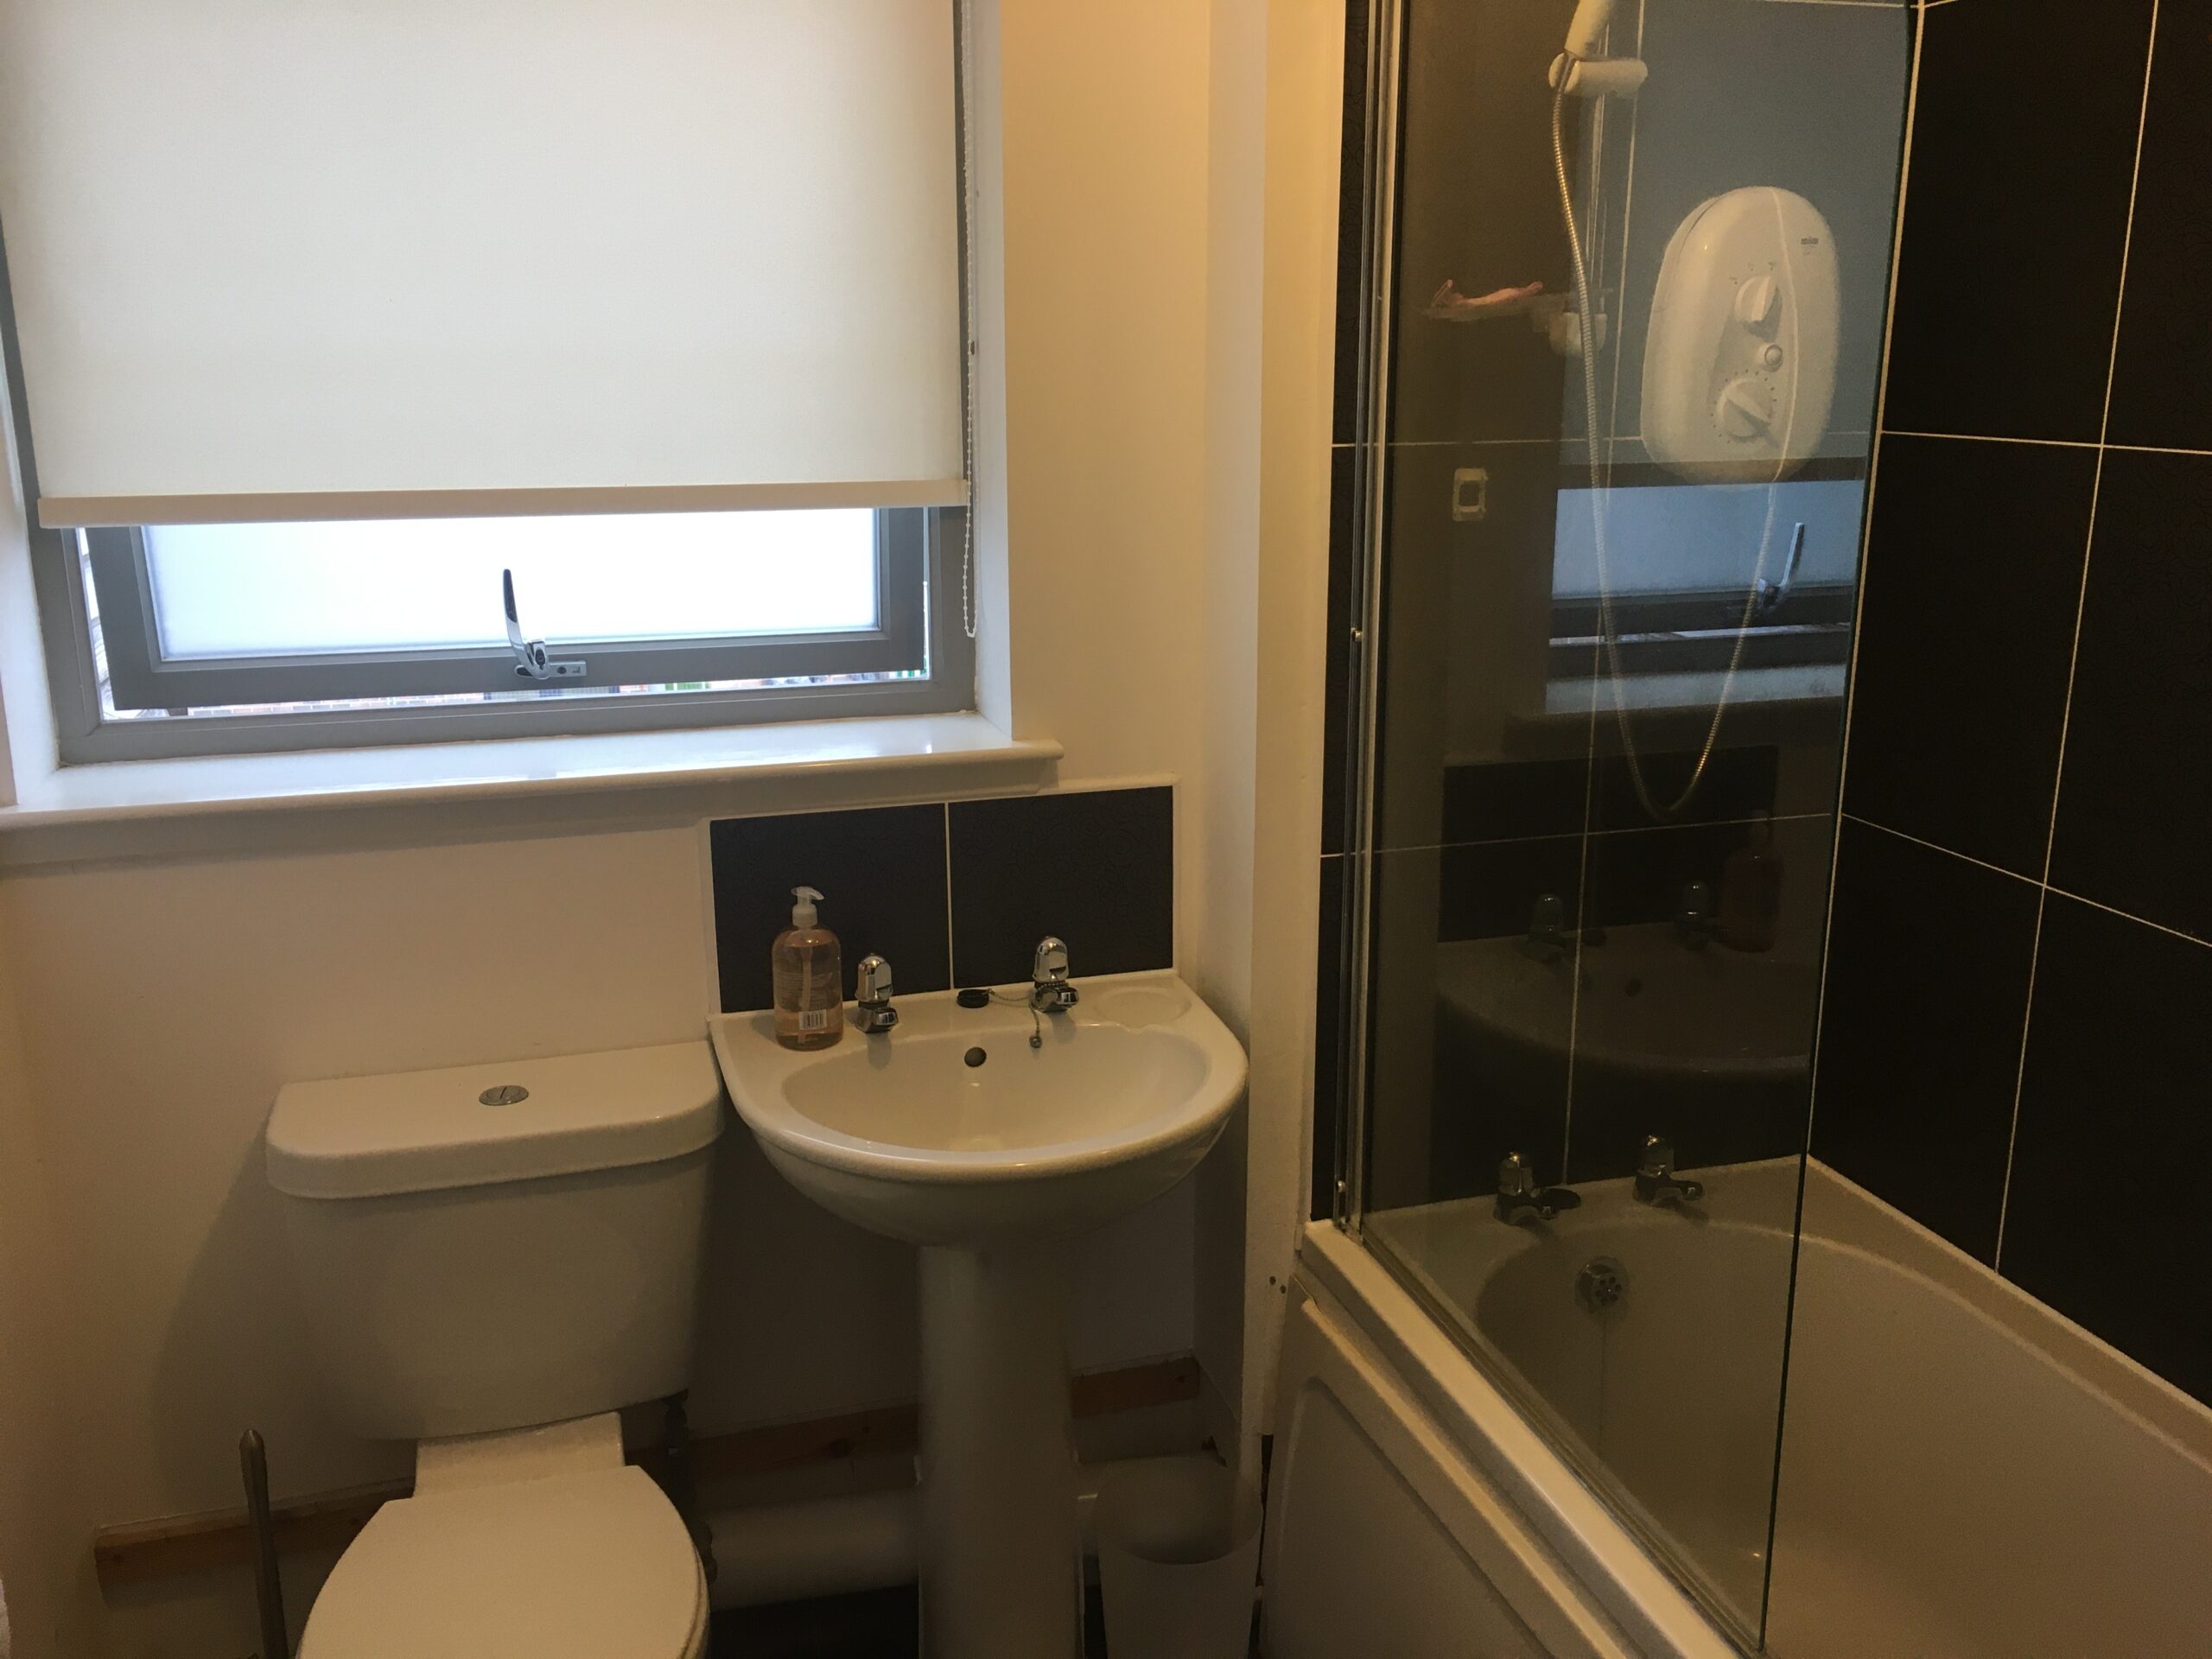 Raploch Bathroom Installation